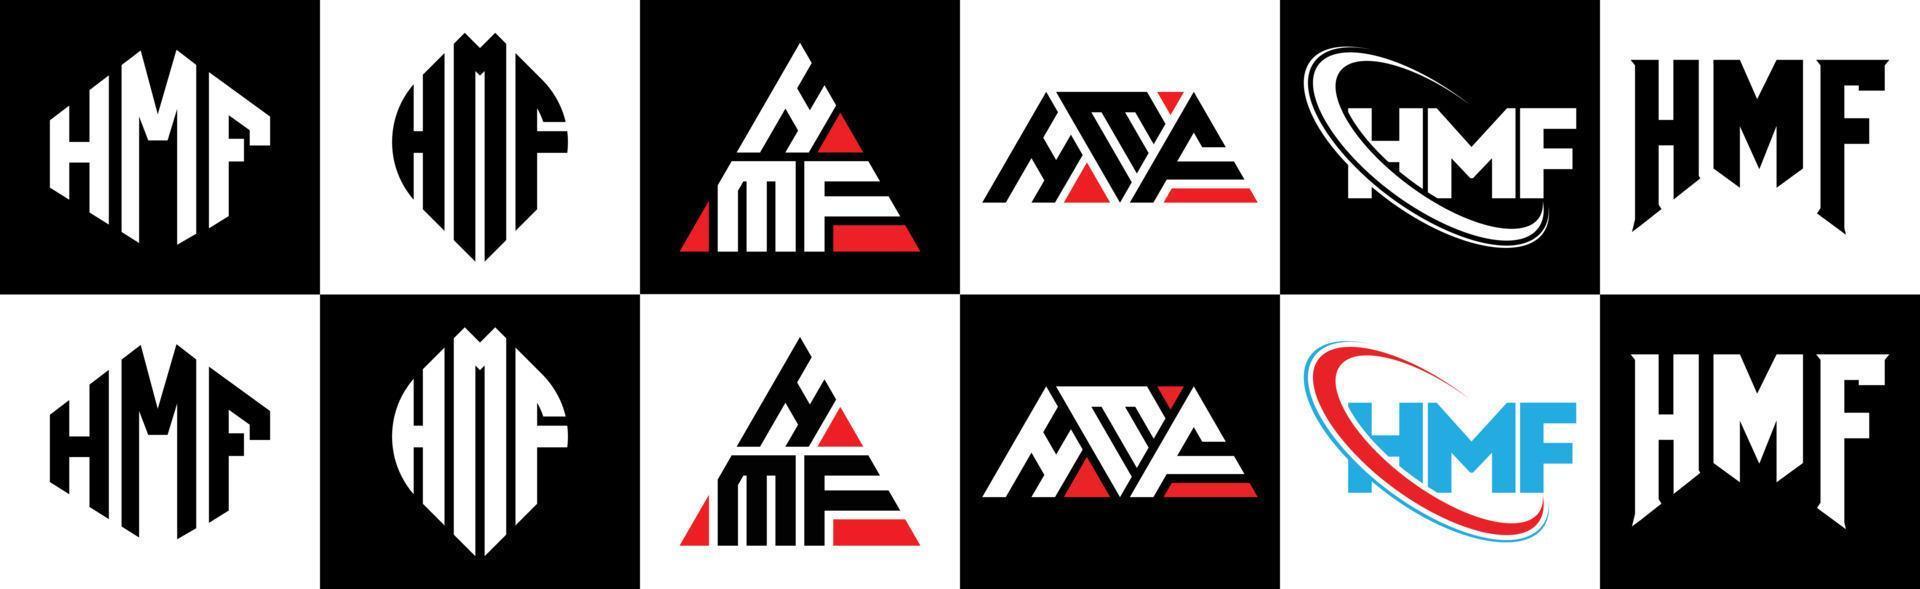 hmf brief logo ontwerp in zes stijl. hmf veelhoek, cirkel, driehoek, zeshoek, vlak en gemakkelijk stijl met zwart en wit kleur variatie brief logo reeks in een tekengebied. hmf minimalistische en klassiek logo vector